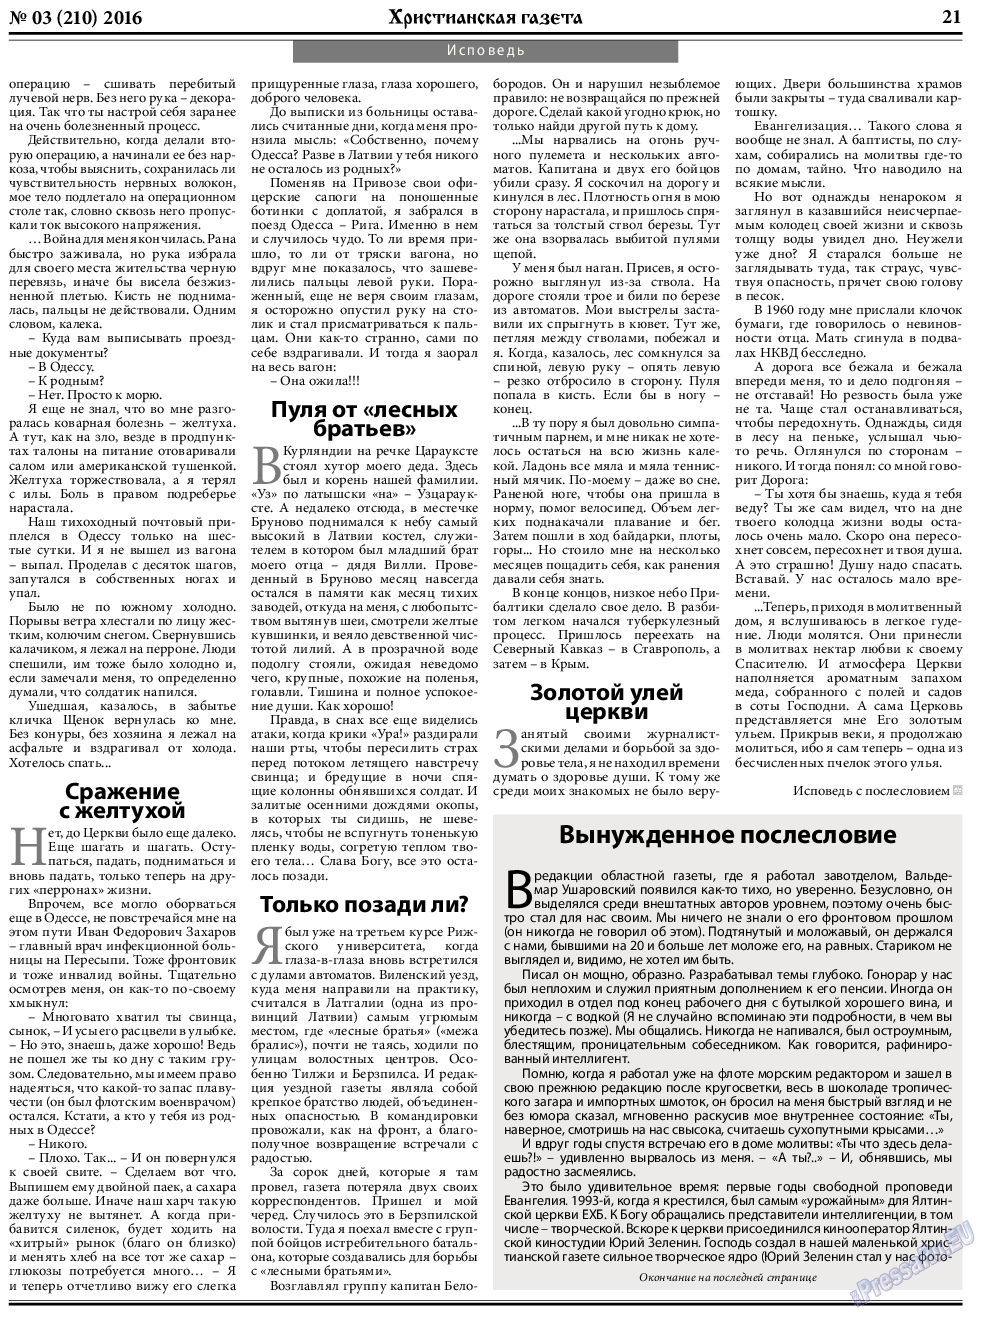 Христианская газета, газета. 2016 №3 стр.29